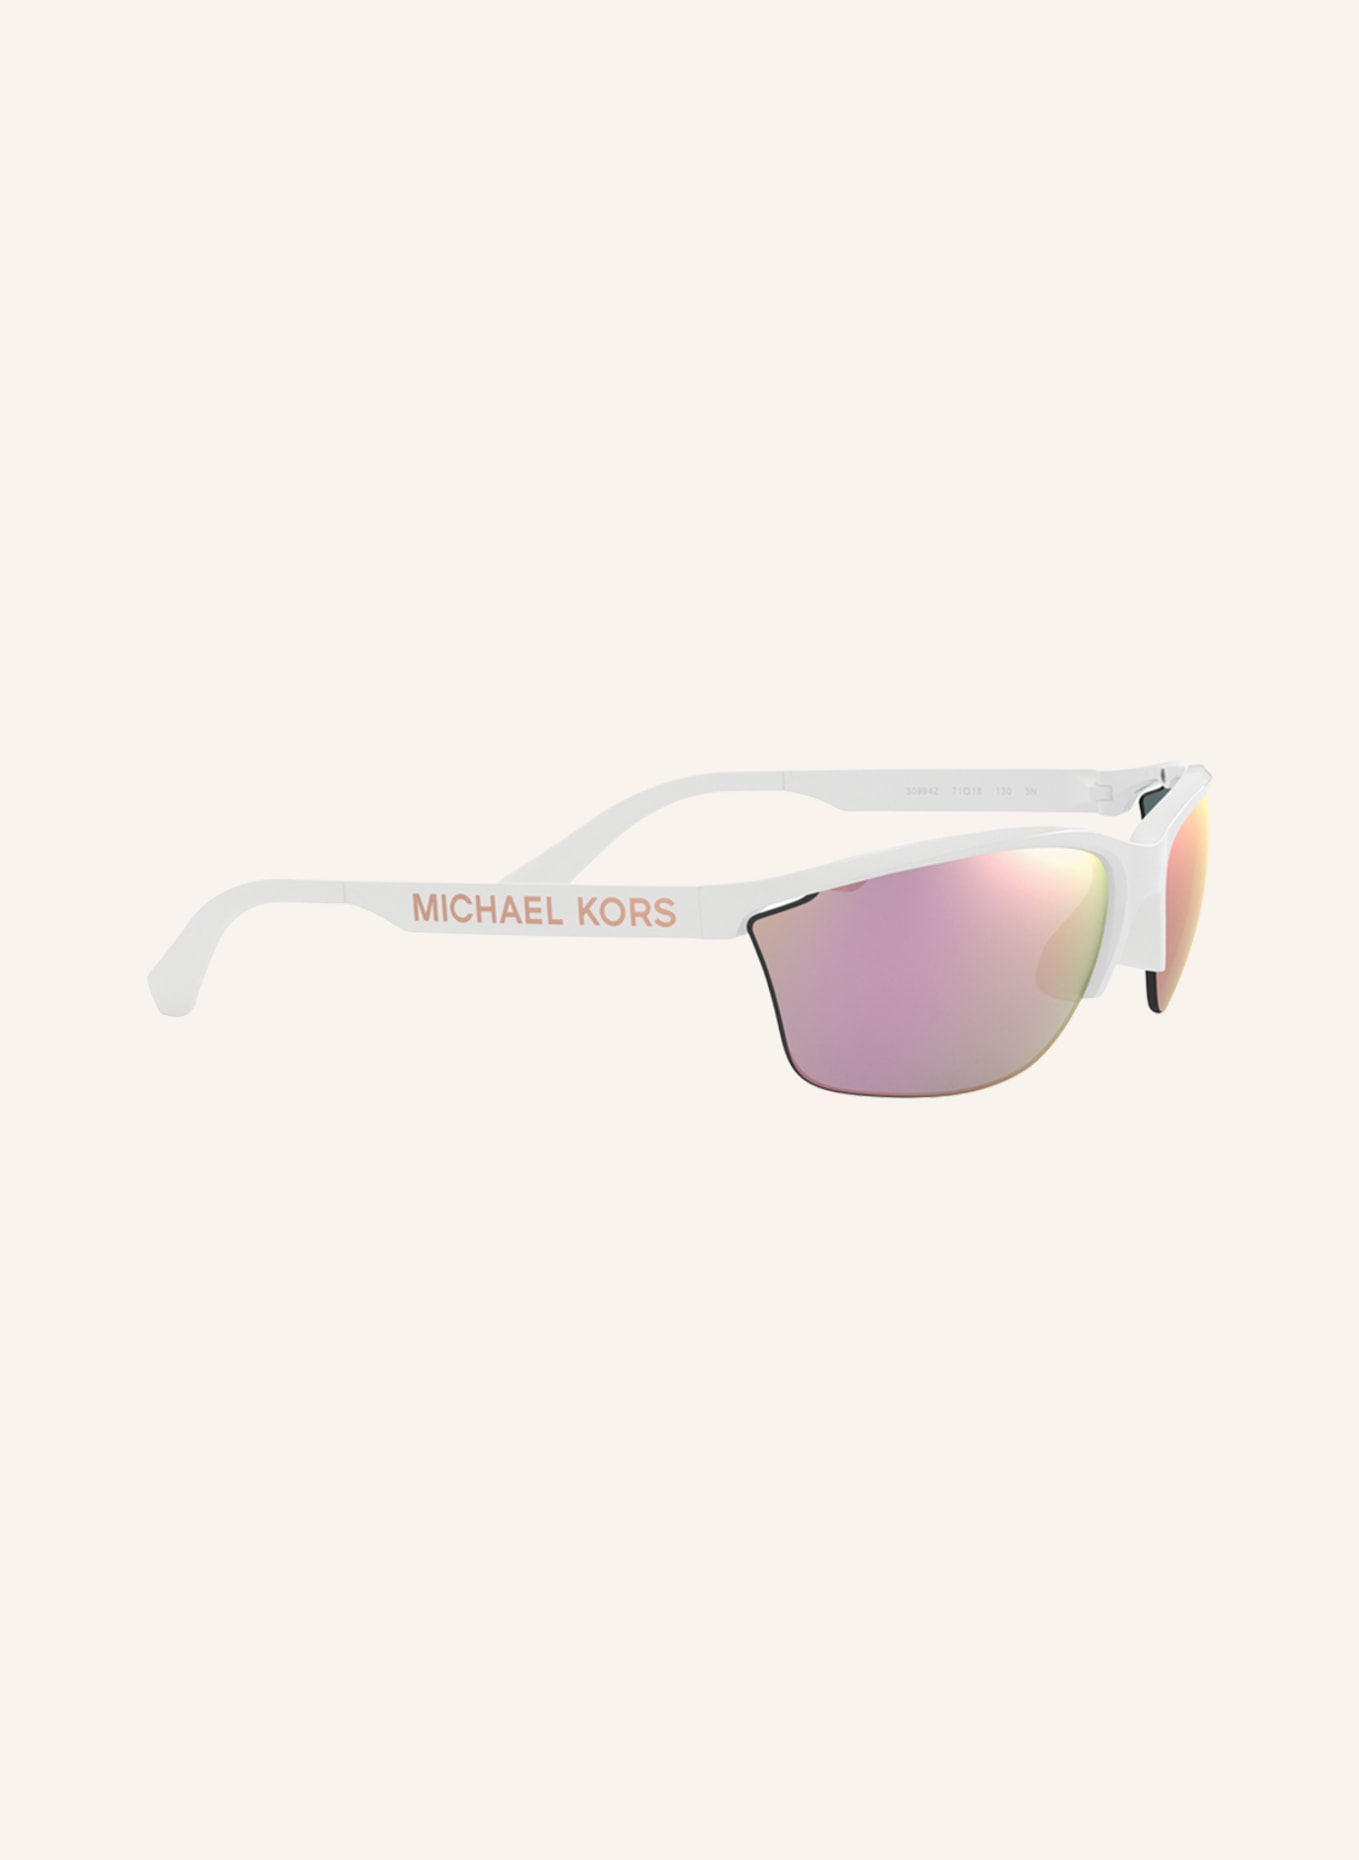 MICHAEL KORS Sonnenbrille MK2110 , Farbe: 30994Z  - WEISS/ PINK VERSPIEGELT (Bild 3)